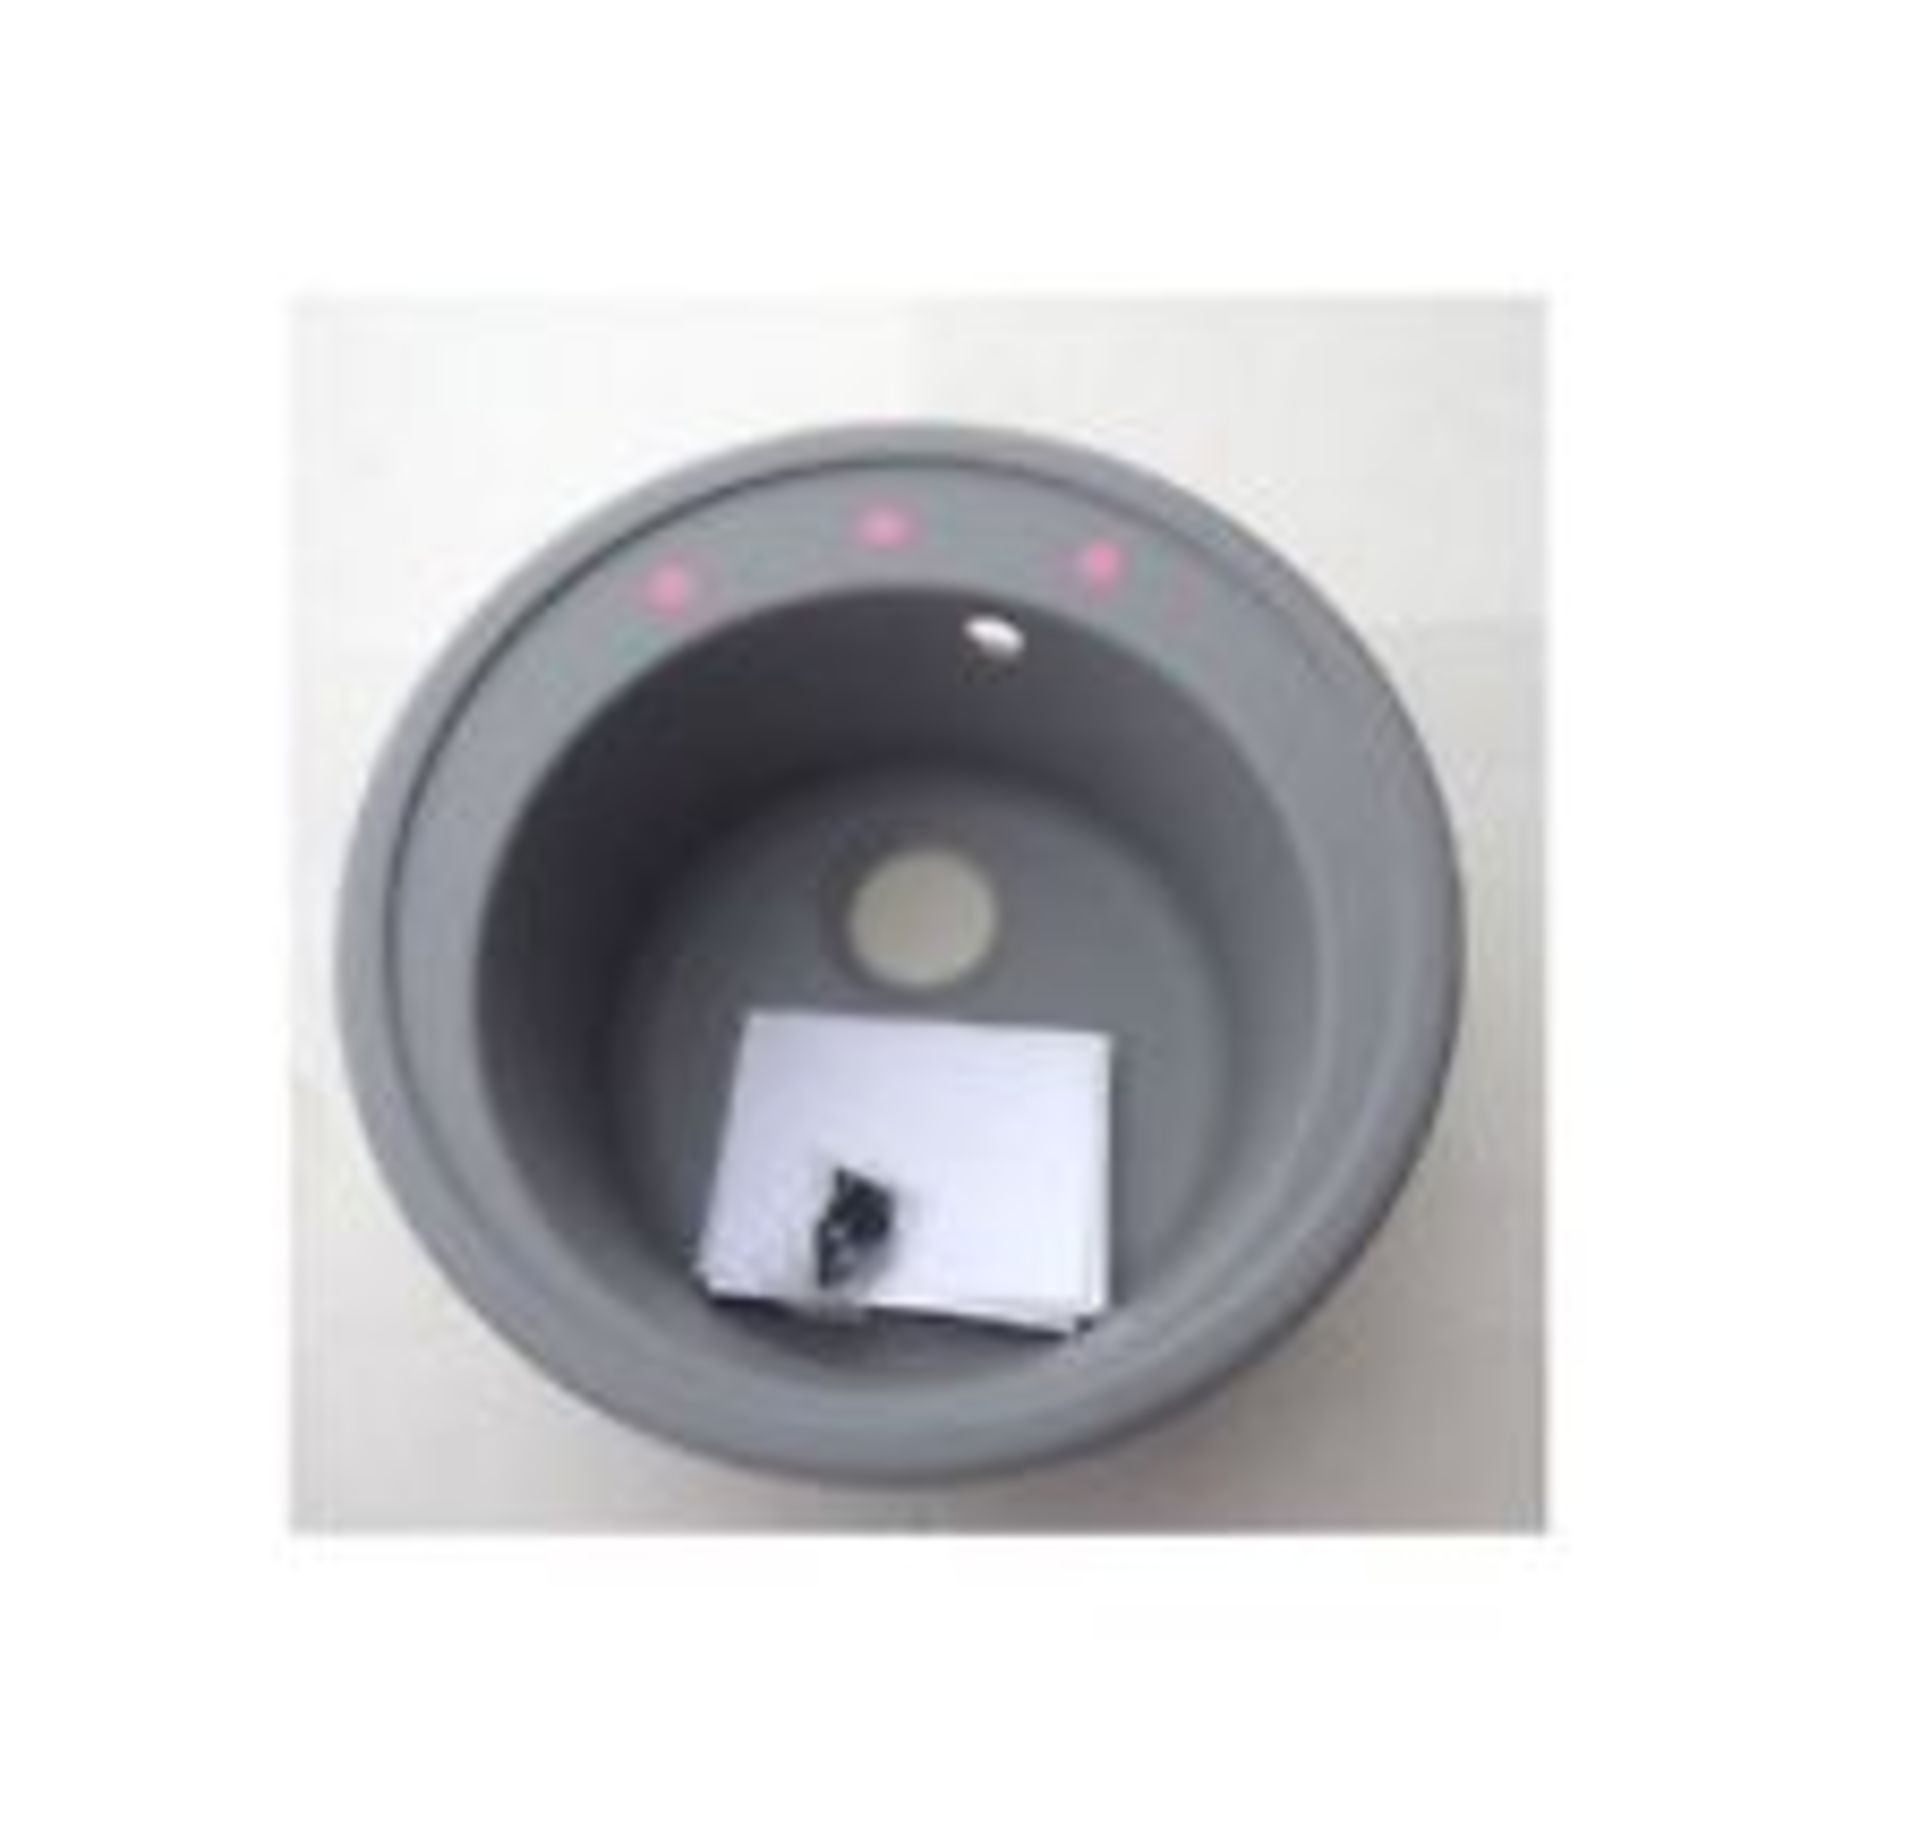 (S4) Orbit 1.0 Round Metallic Grey Sink. RRP £149.99. Overall Diameter 510mm Bowl depth 200mm